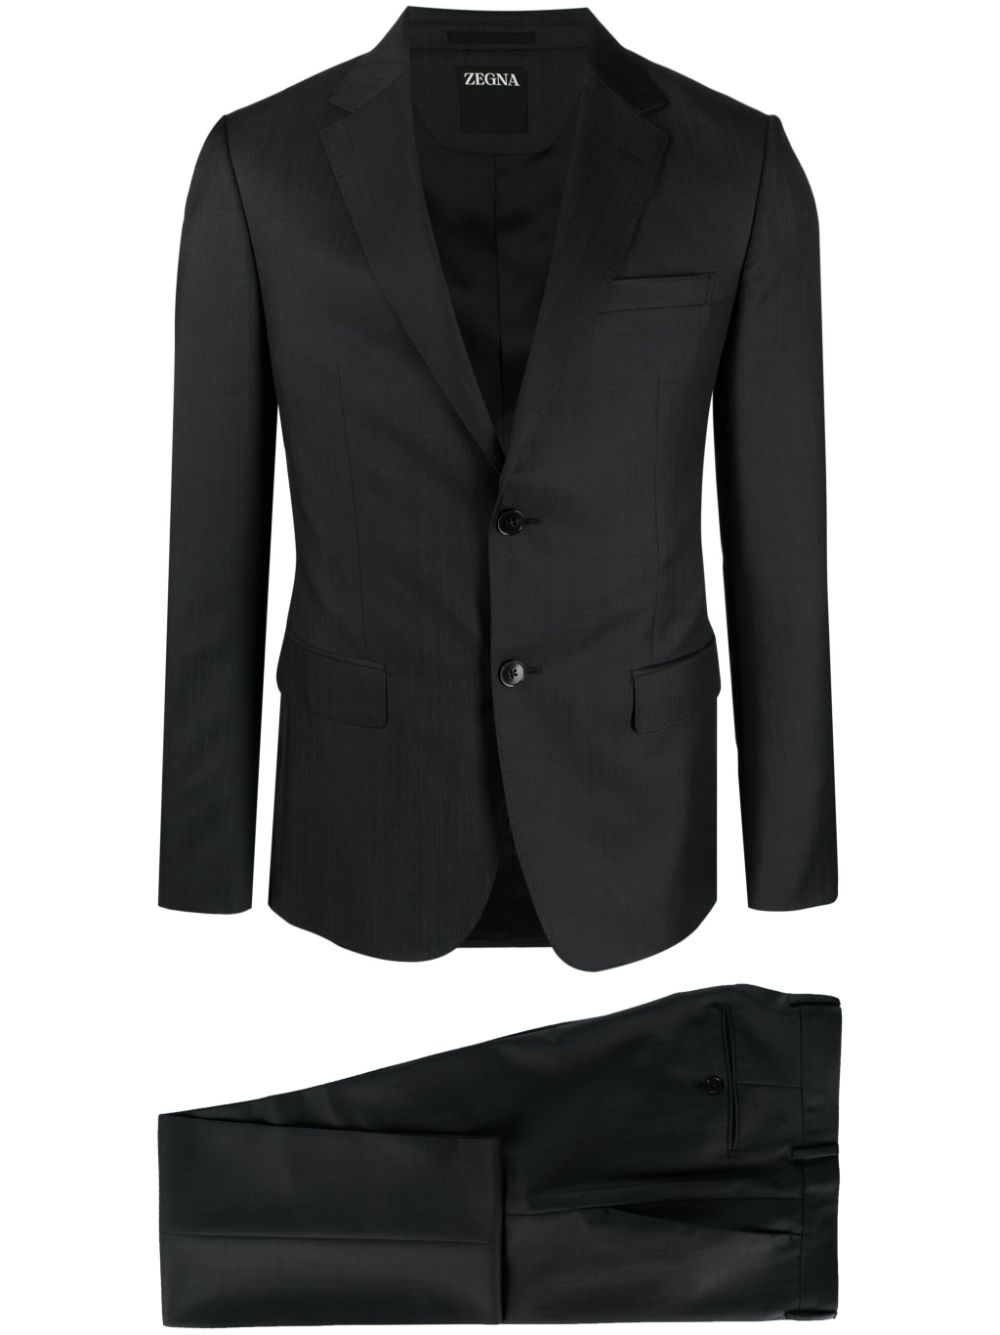 Luxury Suits for Men - Loschi Boutique